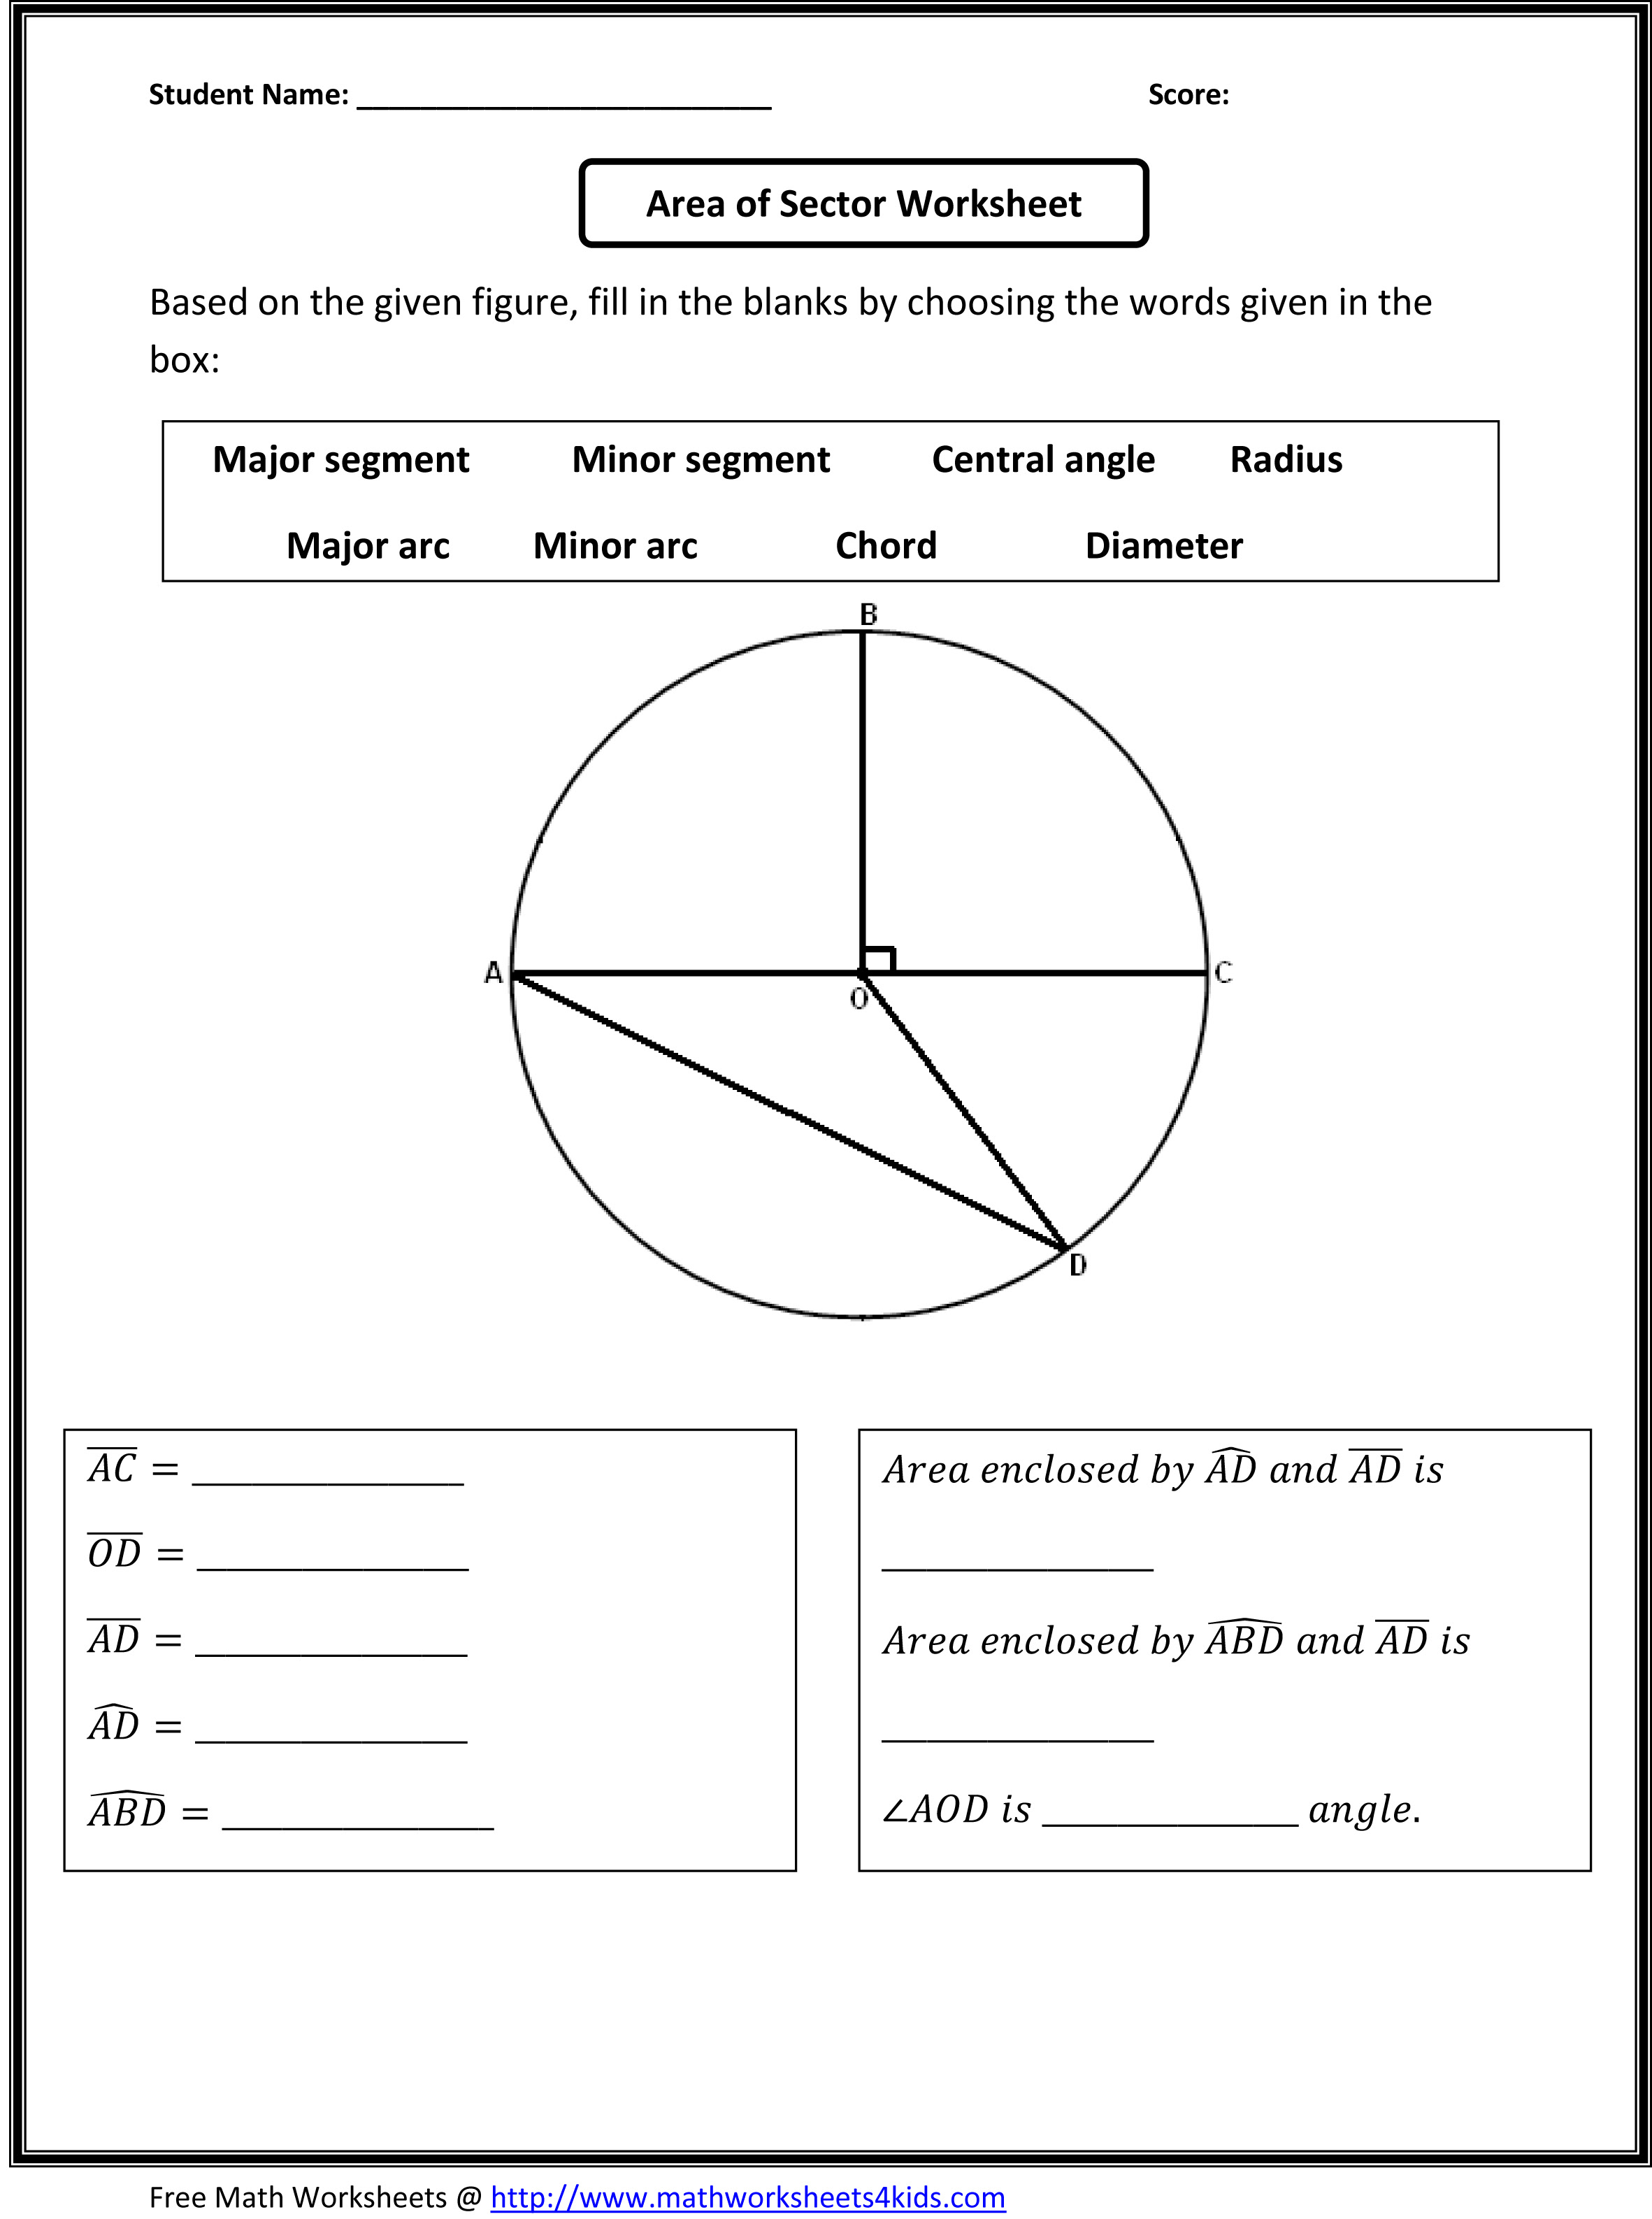 Naming Parts Of A Circle Worksheet